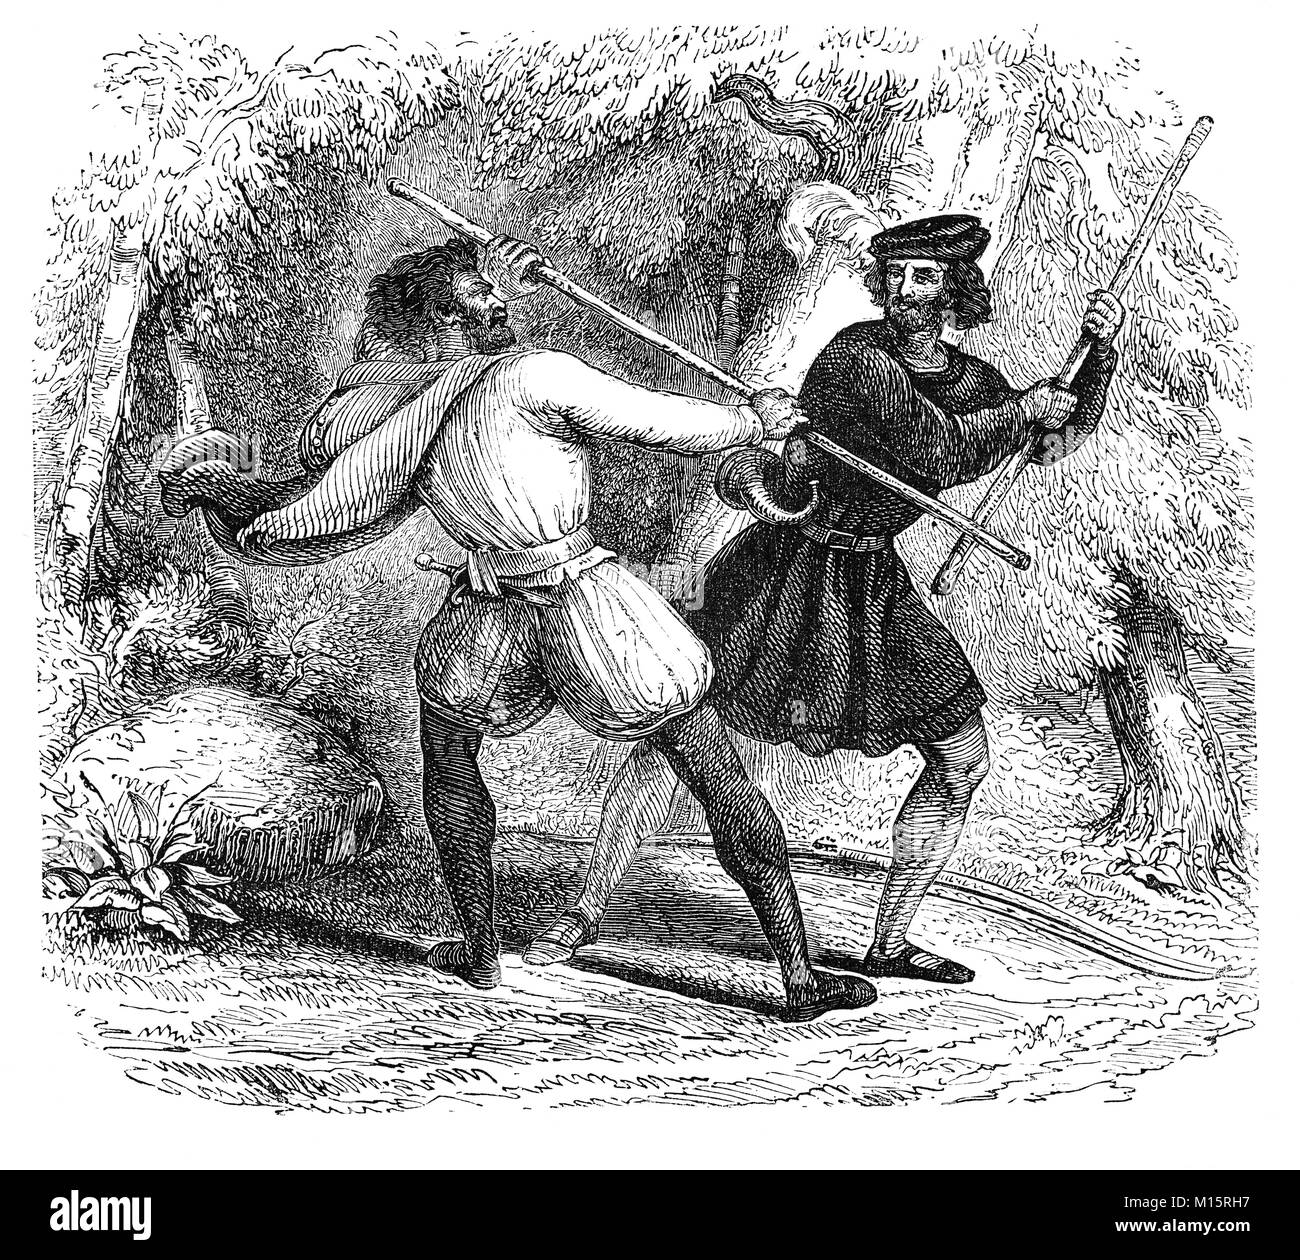 Robin Hood and Little John lutte avec personnel au 14ème siècle la forêt de Sherwood, dans le Nottinghamshire, Angleterre. Banque D'Images